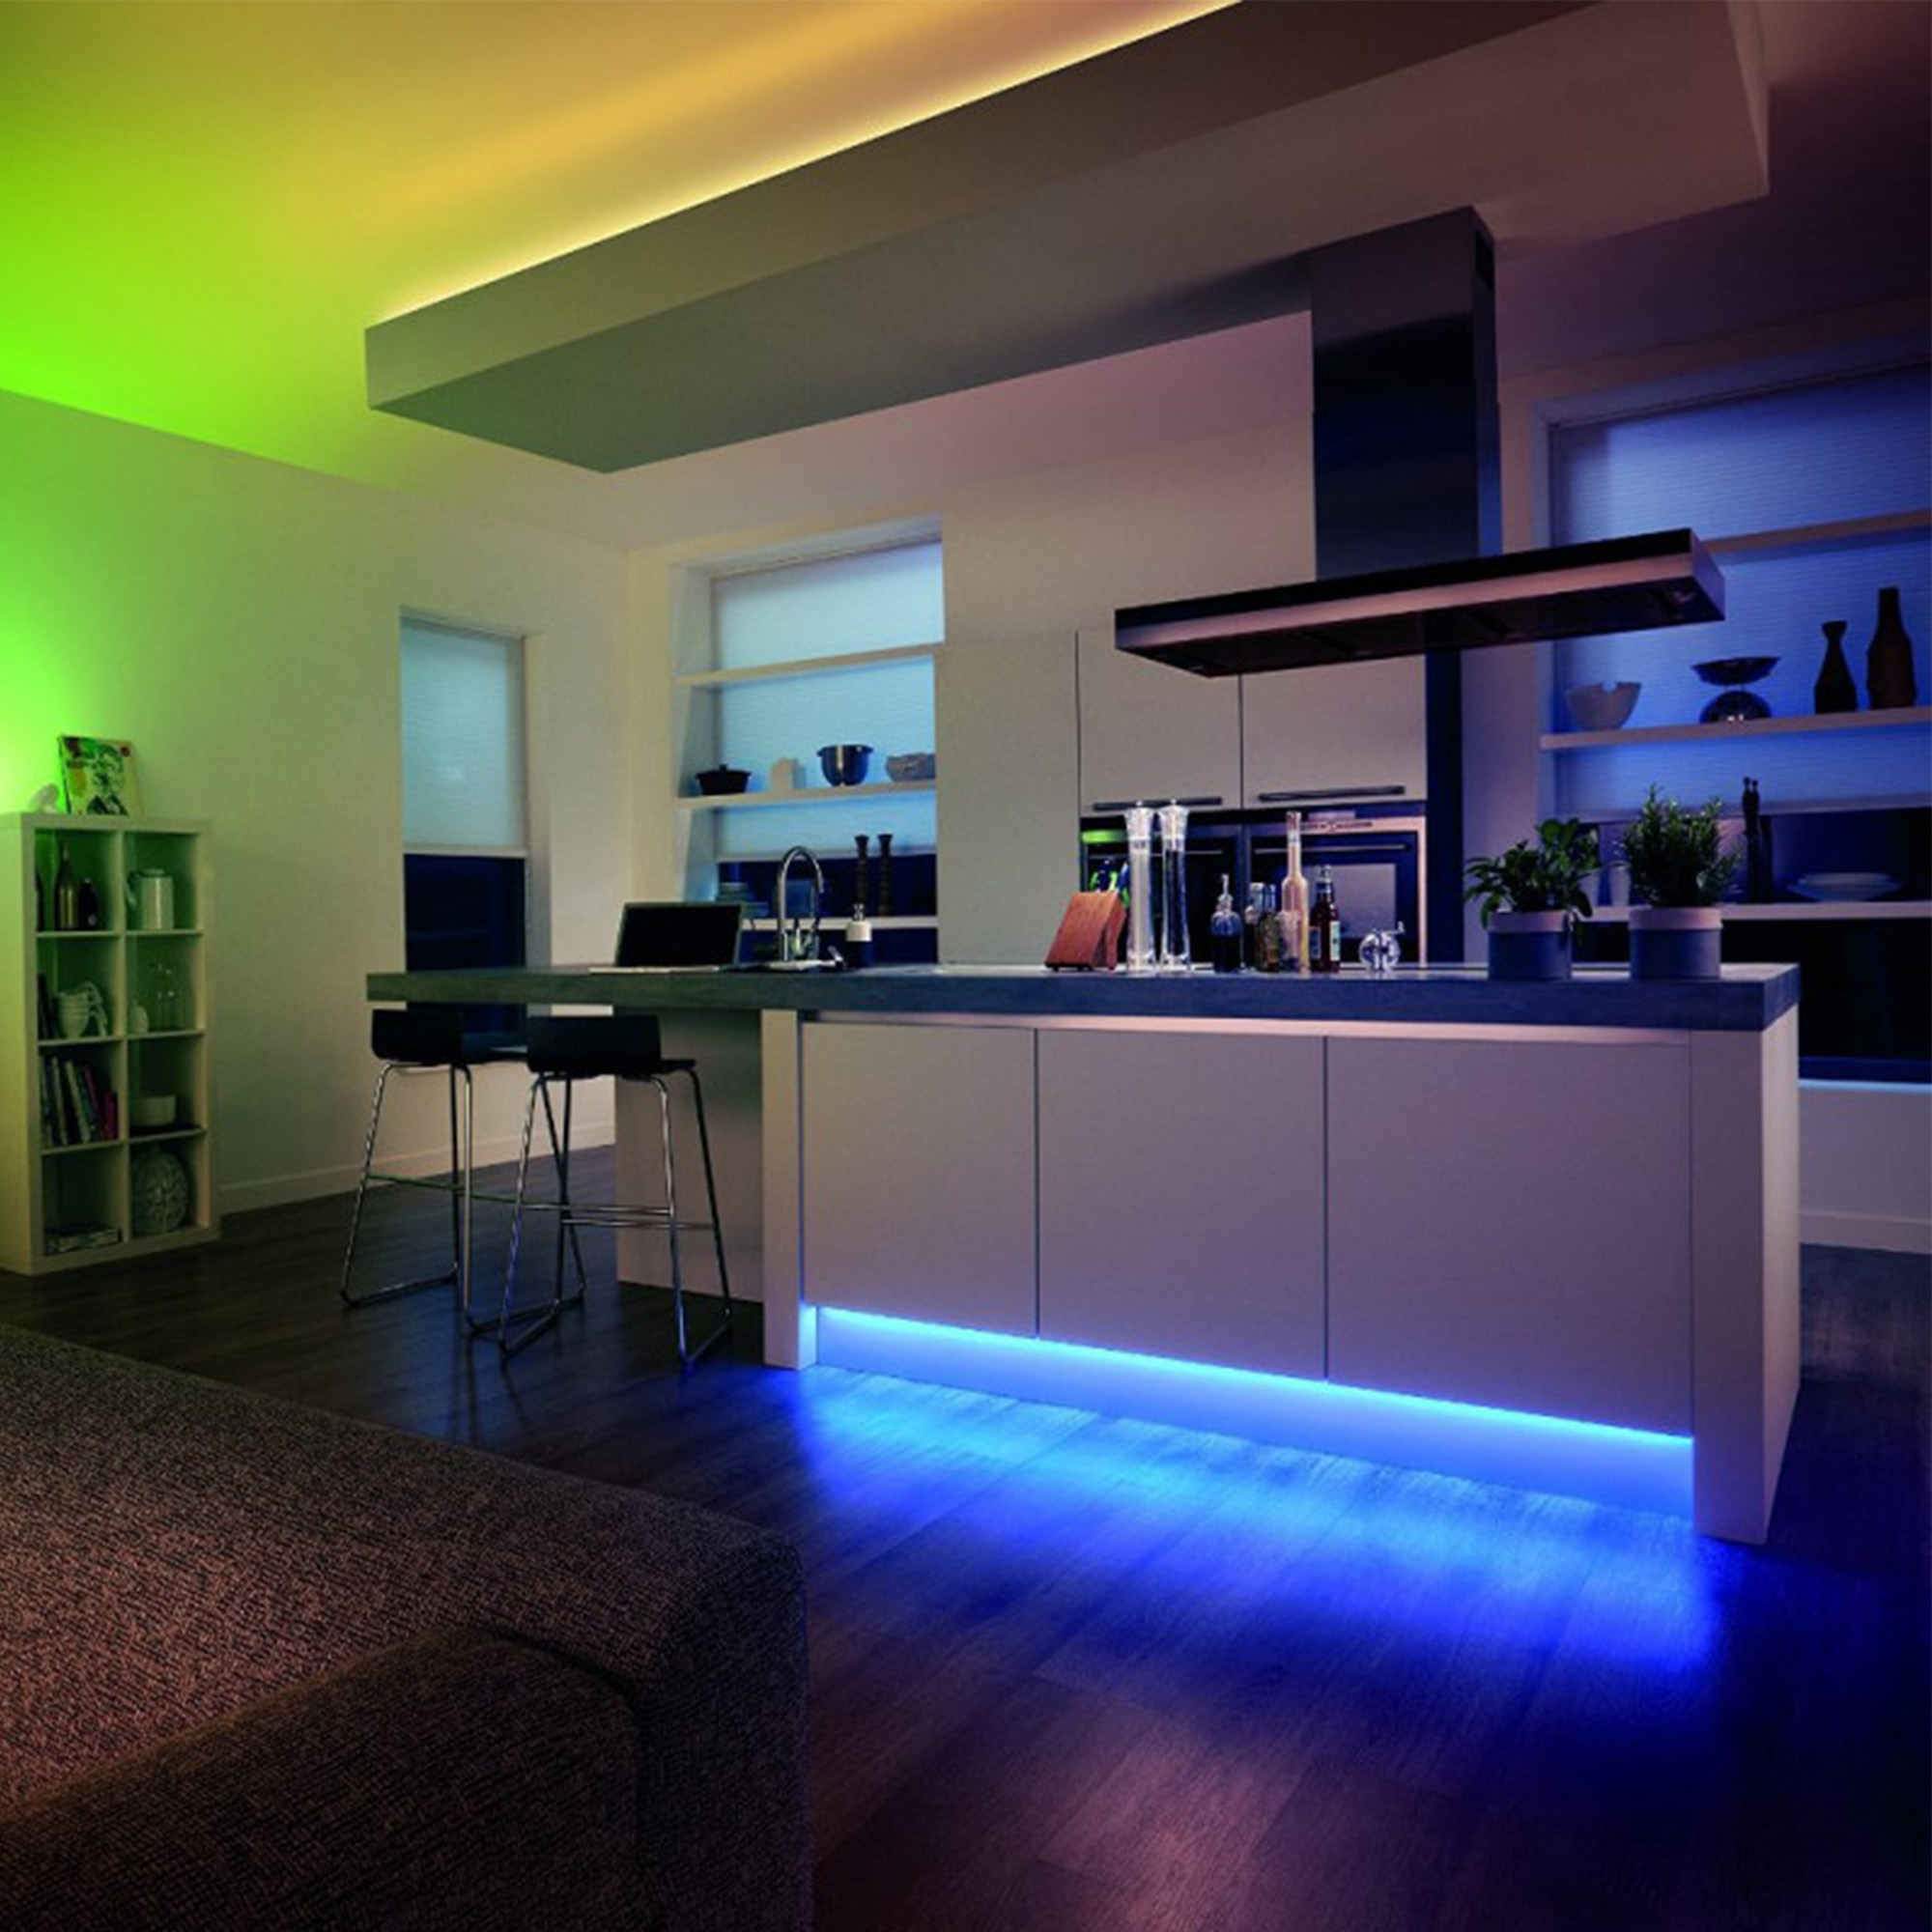 Design подсветка. Philips Hue strip. Philips Hue умный дом. Led Philips RGB. Светодиодная подсветка в интерьере.